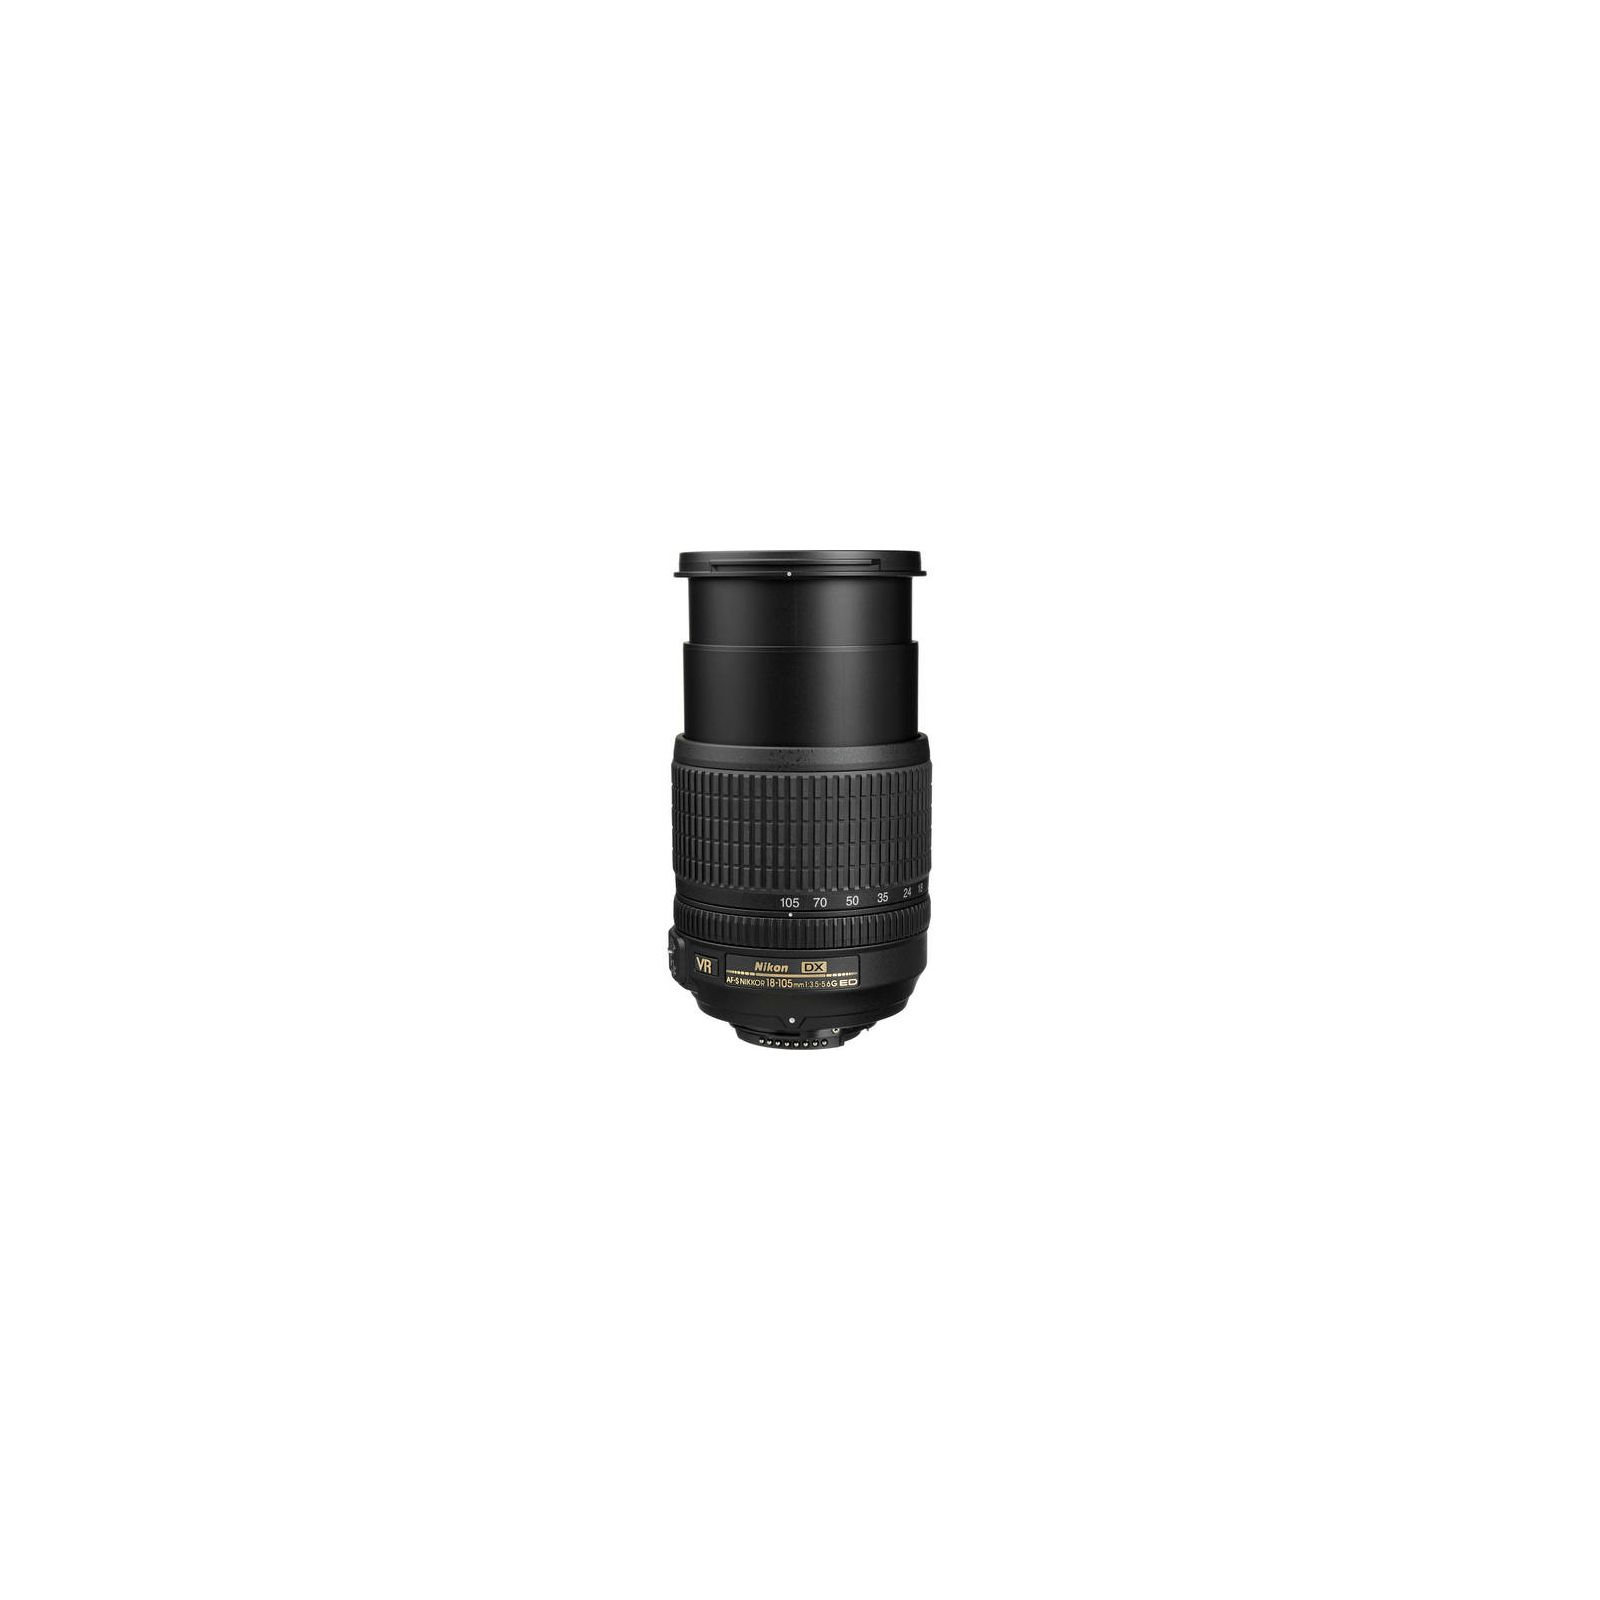 Nikon AF-S 18-105mm f/3.5-5.6G VR DX standardni objektiv Nikkor 18-105 f/3.5-5.6 F3.5-5.6 3.5-5.6 auto focus zoom lens (JAA805DA)